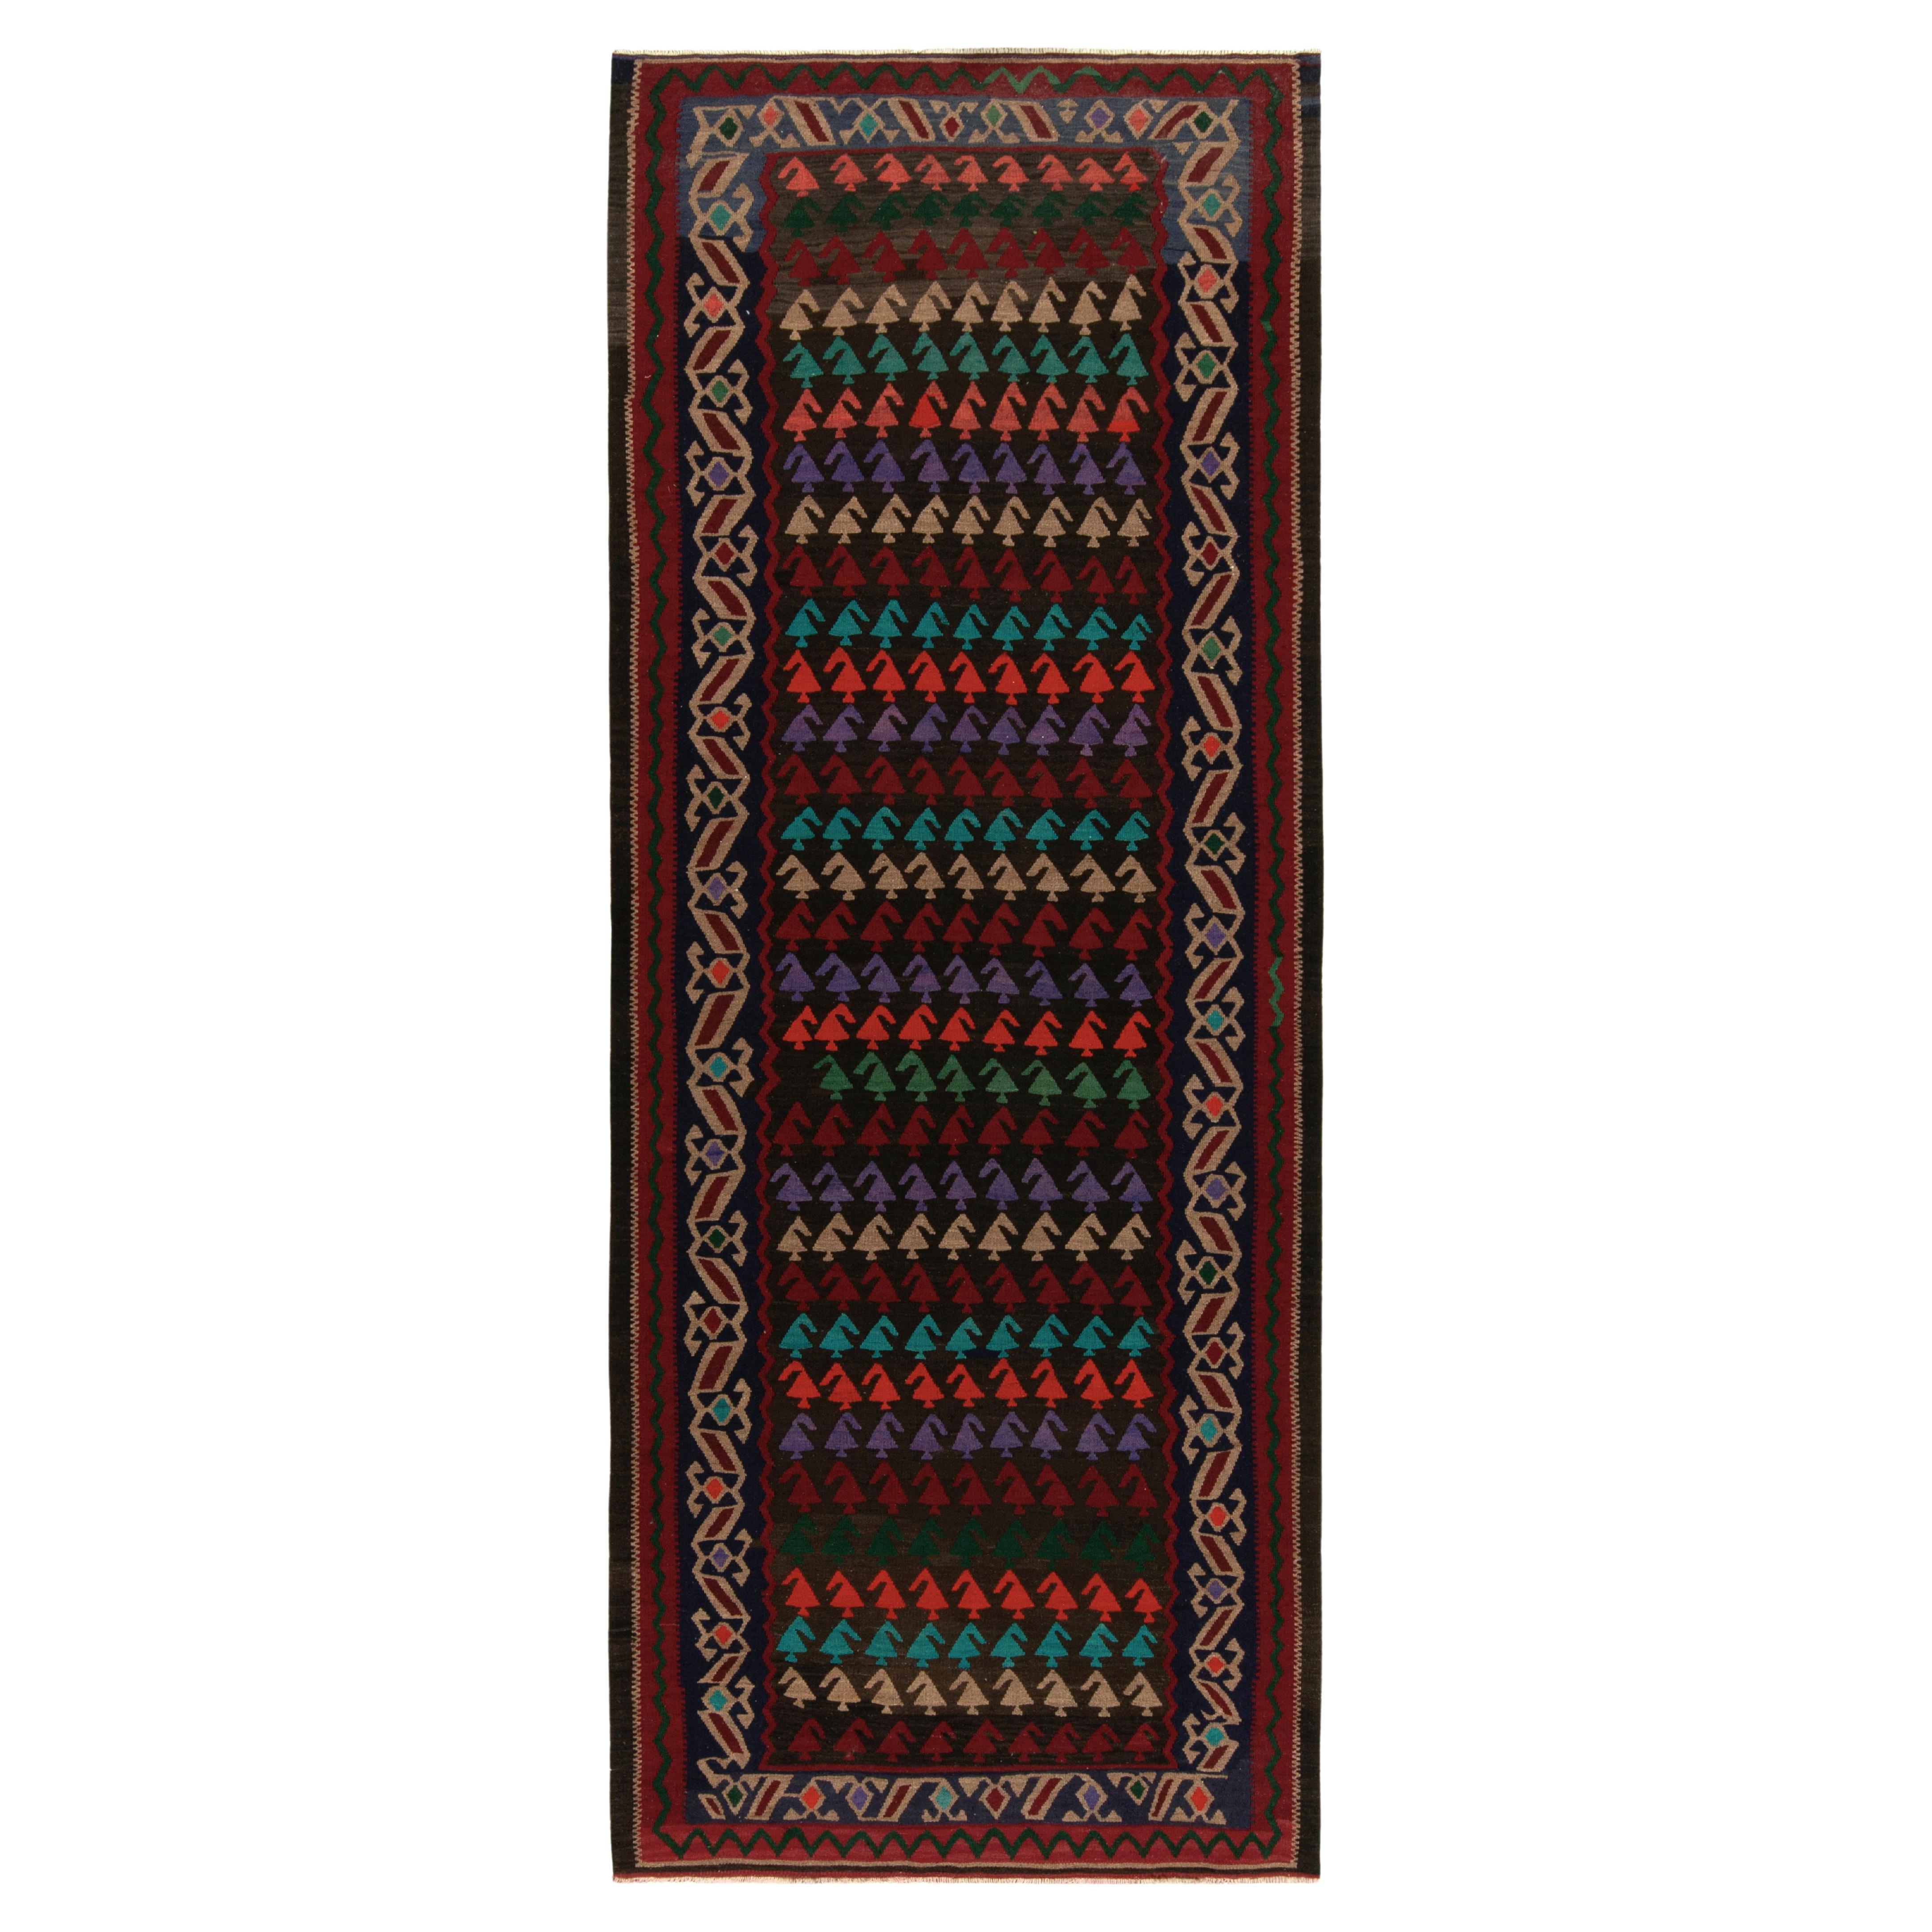 Tapis Kilim turc vintage tribal rouge, beige-bleu et multicolore par Rug & Kilim